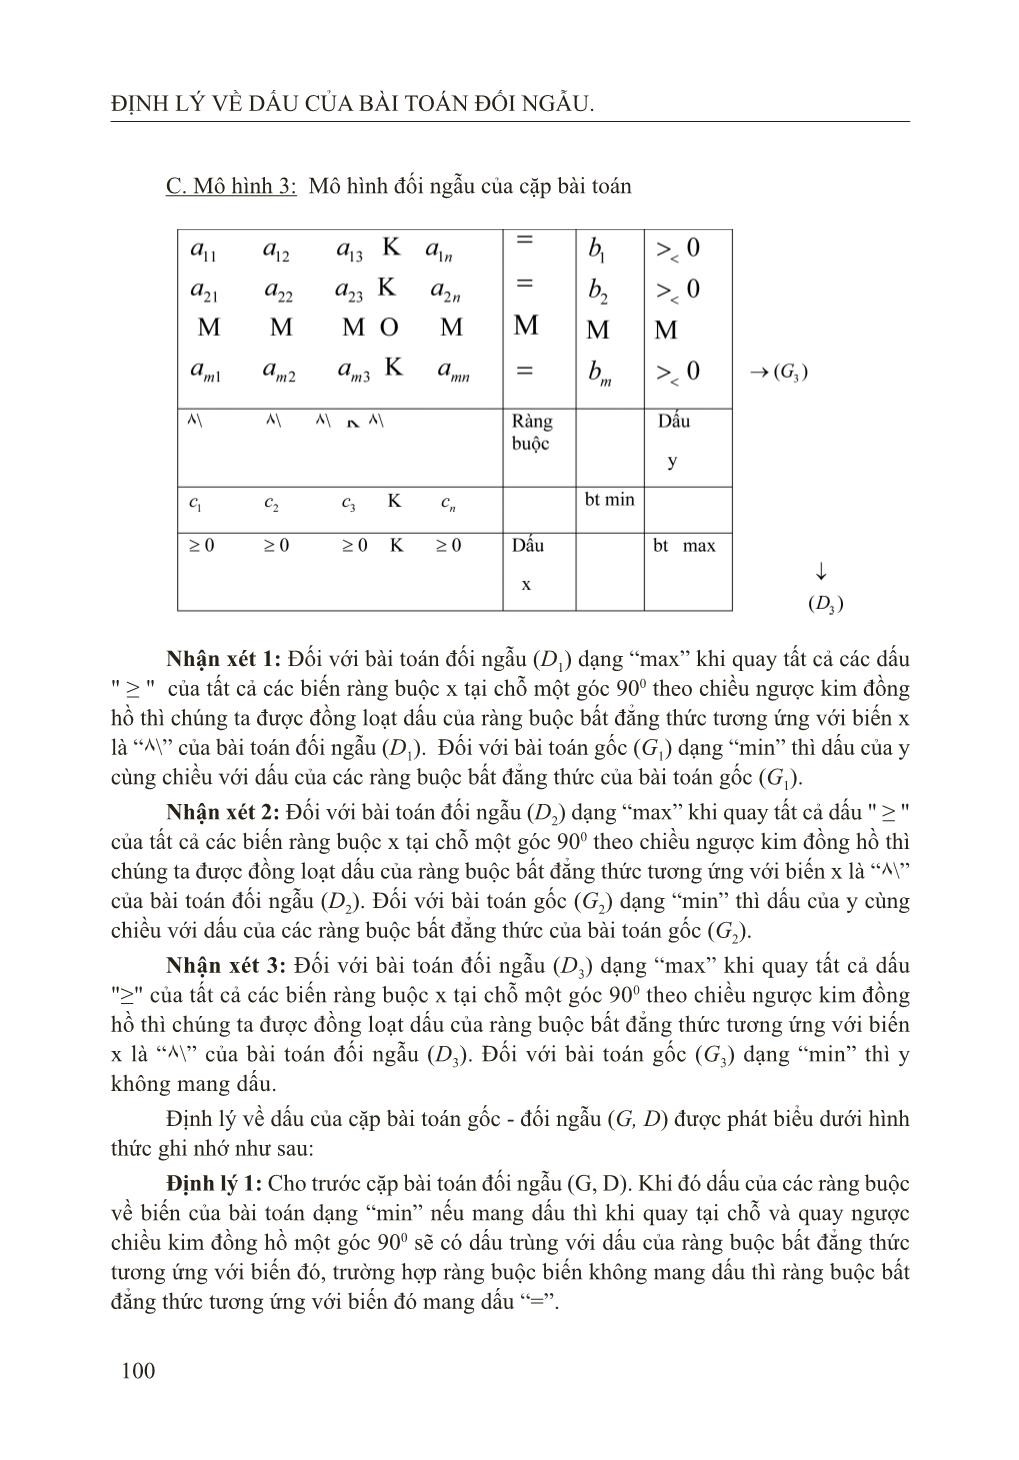 Định lý về dấu của bài toán đối ngẫu trang 4